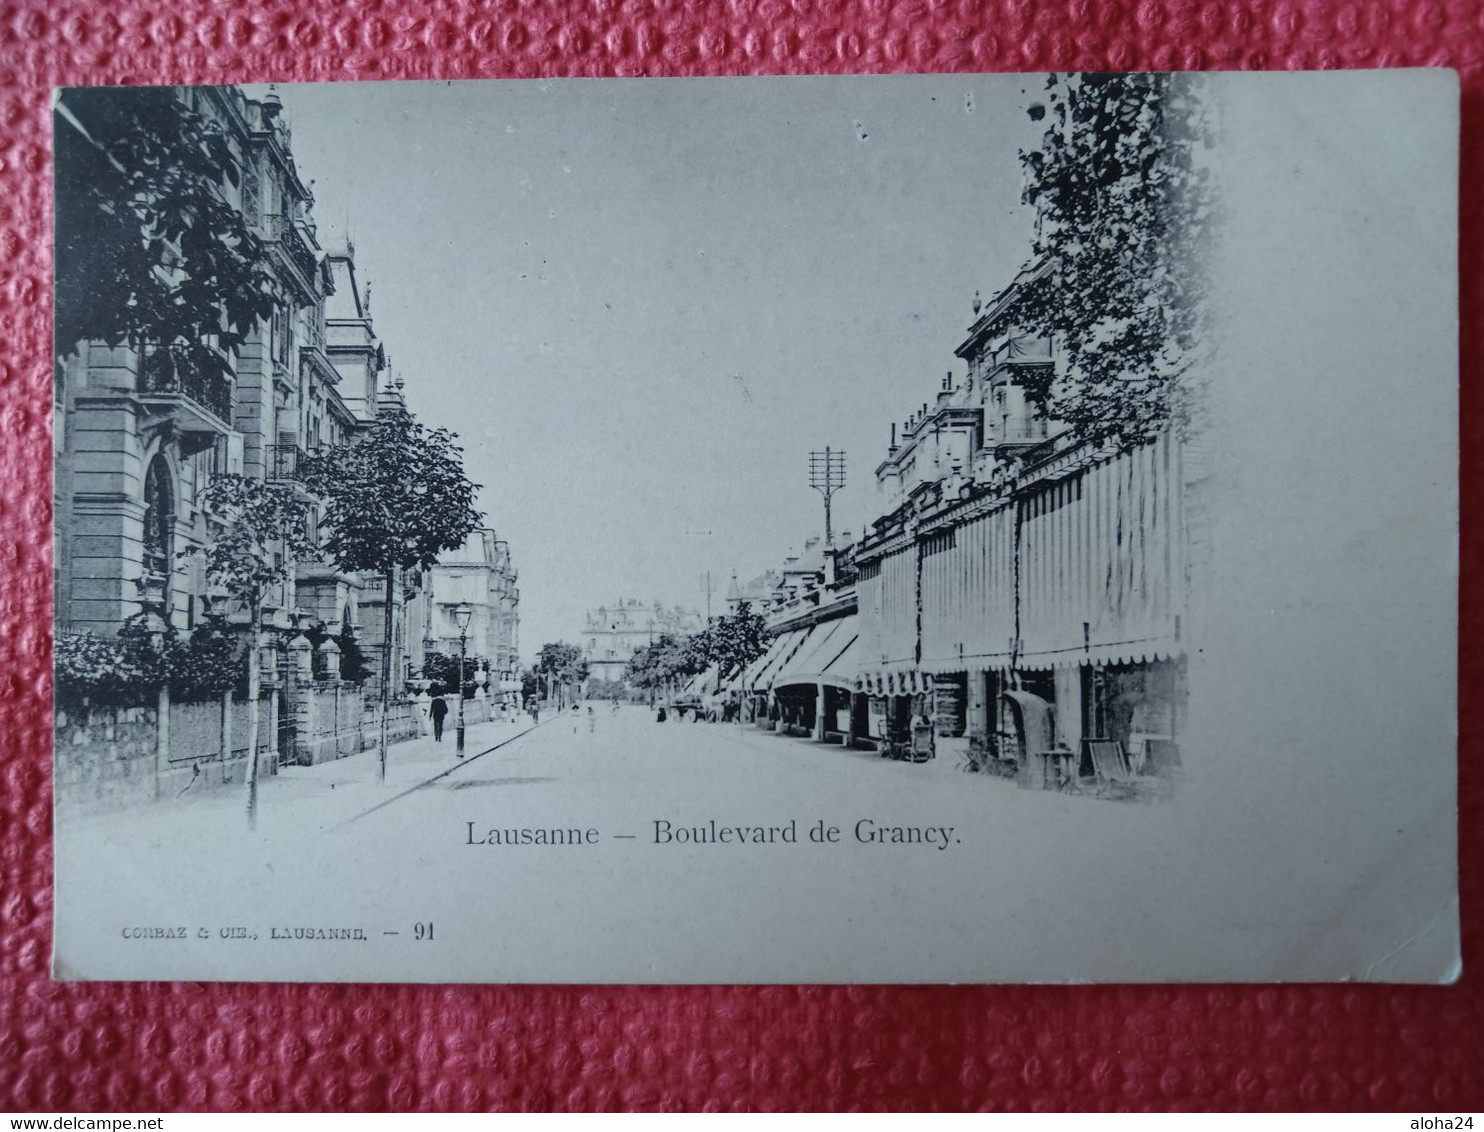 SUISSE LAUSANNE BOULEVARD DE GRANCY - 6127 - Grancy